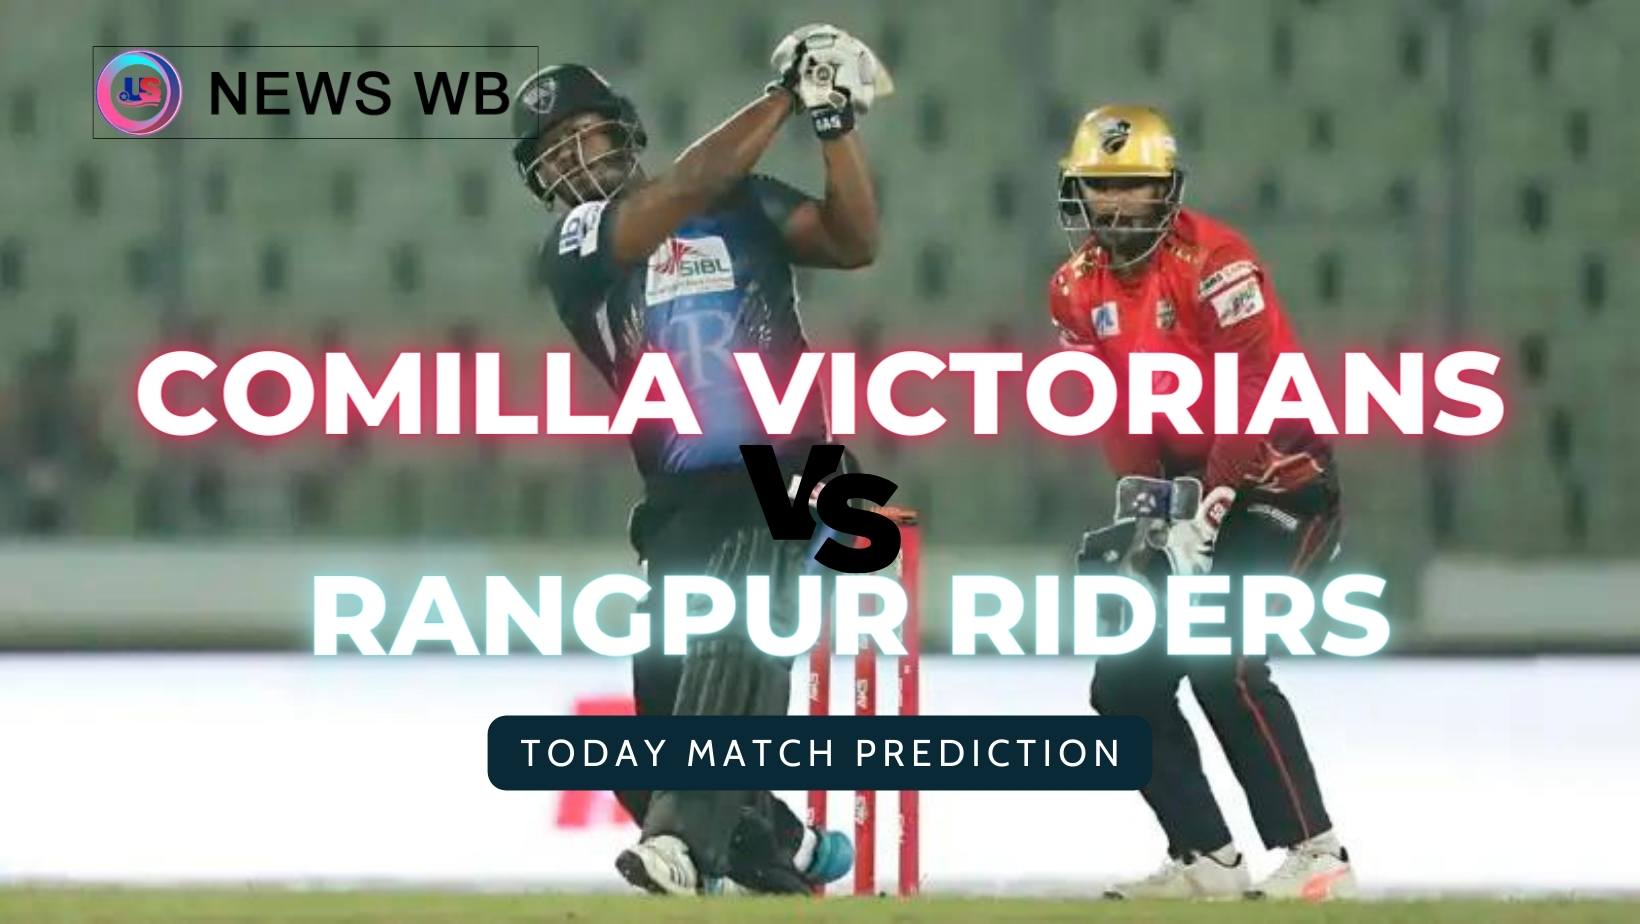 Today Match Prediction: CV vs RGR Dream11 Team, Comilla Victorians vs Rangpur Riders 15th Match, Who Will Win?